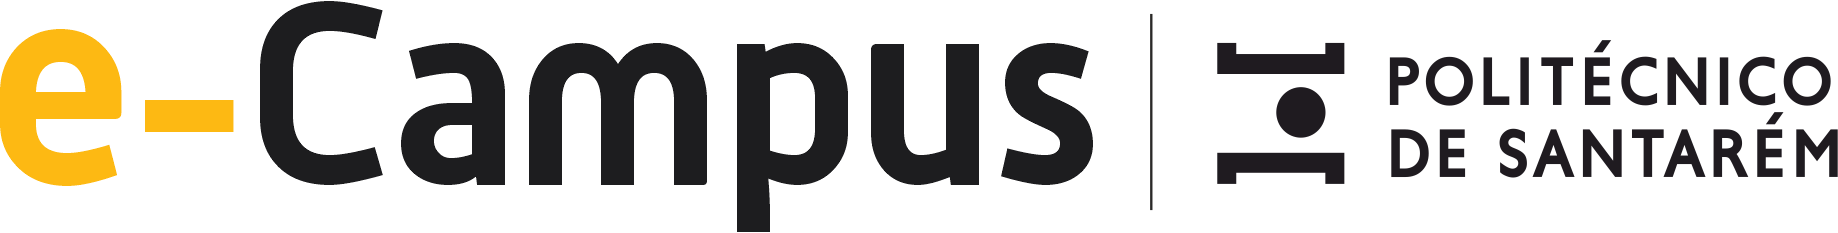 eCampus logotipo